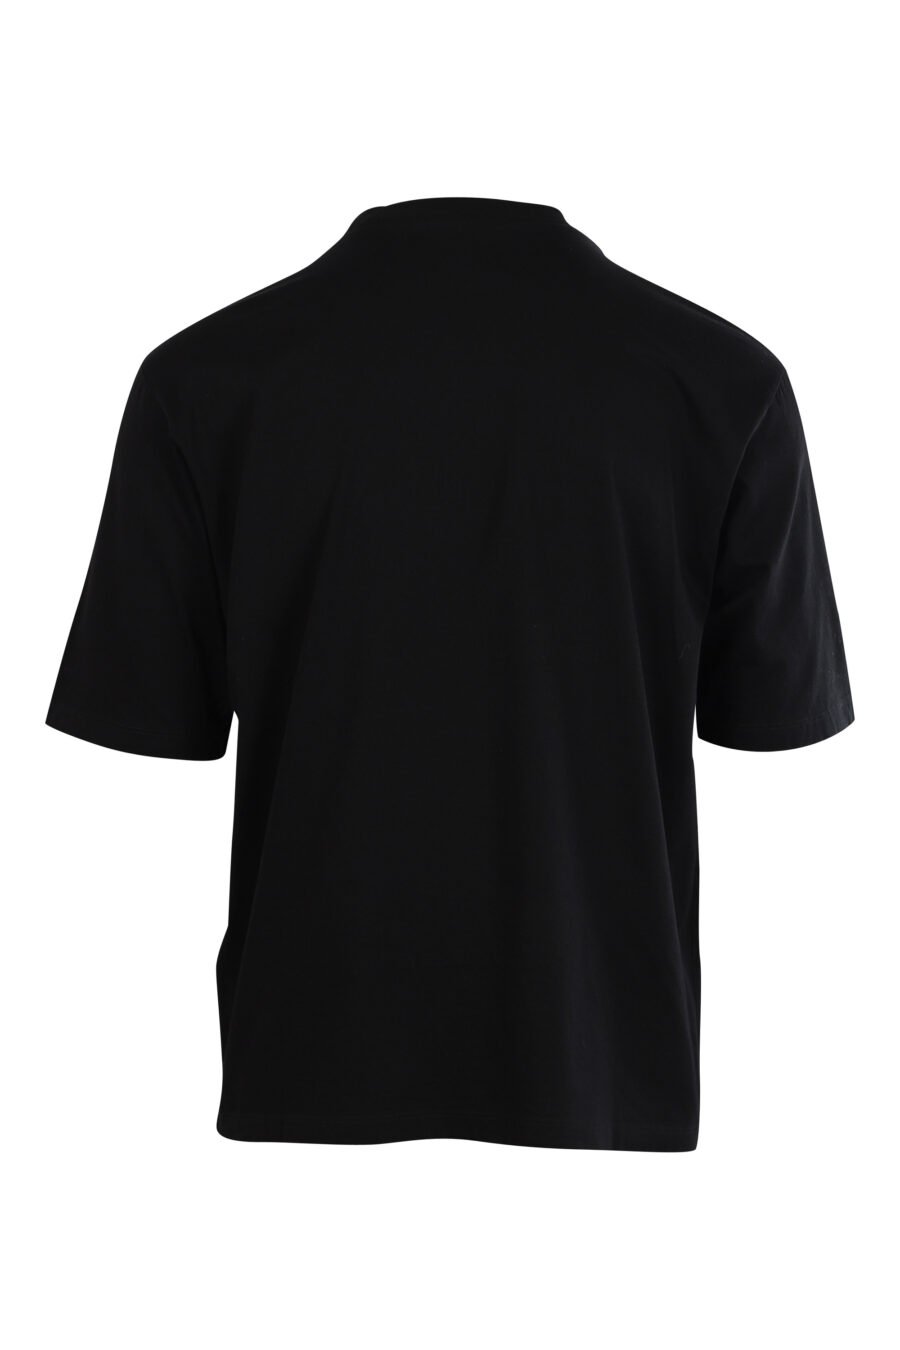 T-shirt "Oversized" preta com logótipo em contraste - 8054148006570 2